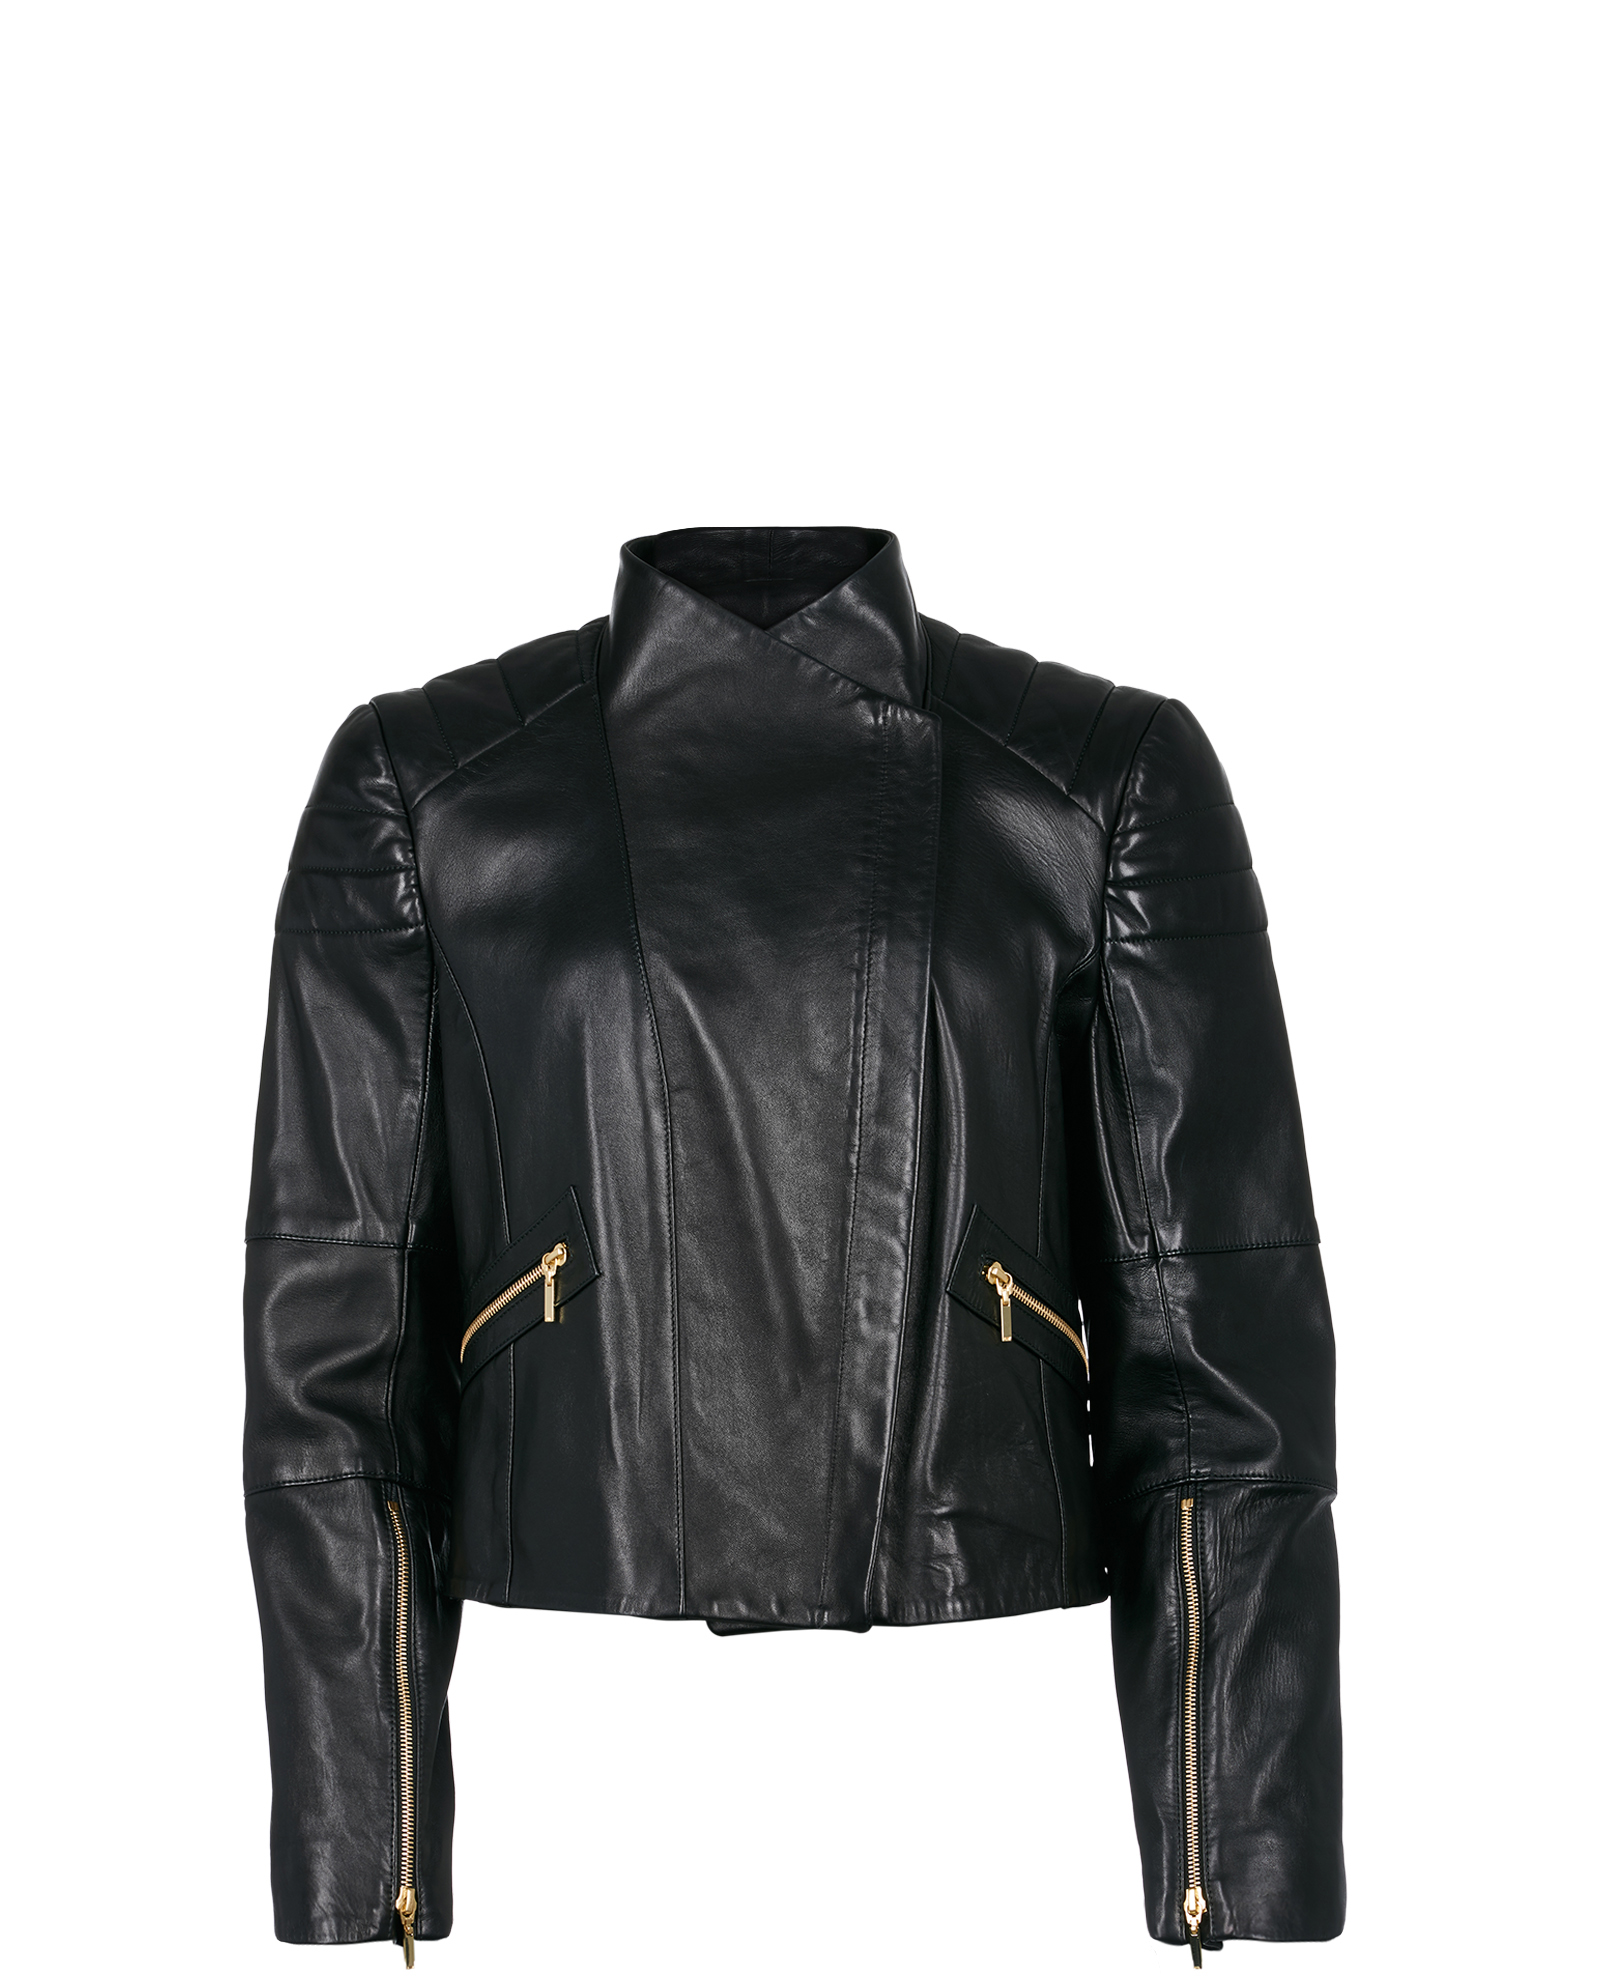 Amanda Wakeley Leather Jacket, Jackets - Designer Exchange | Buy Sell ...